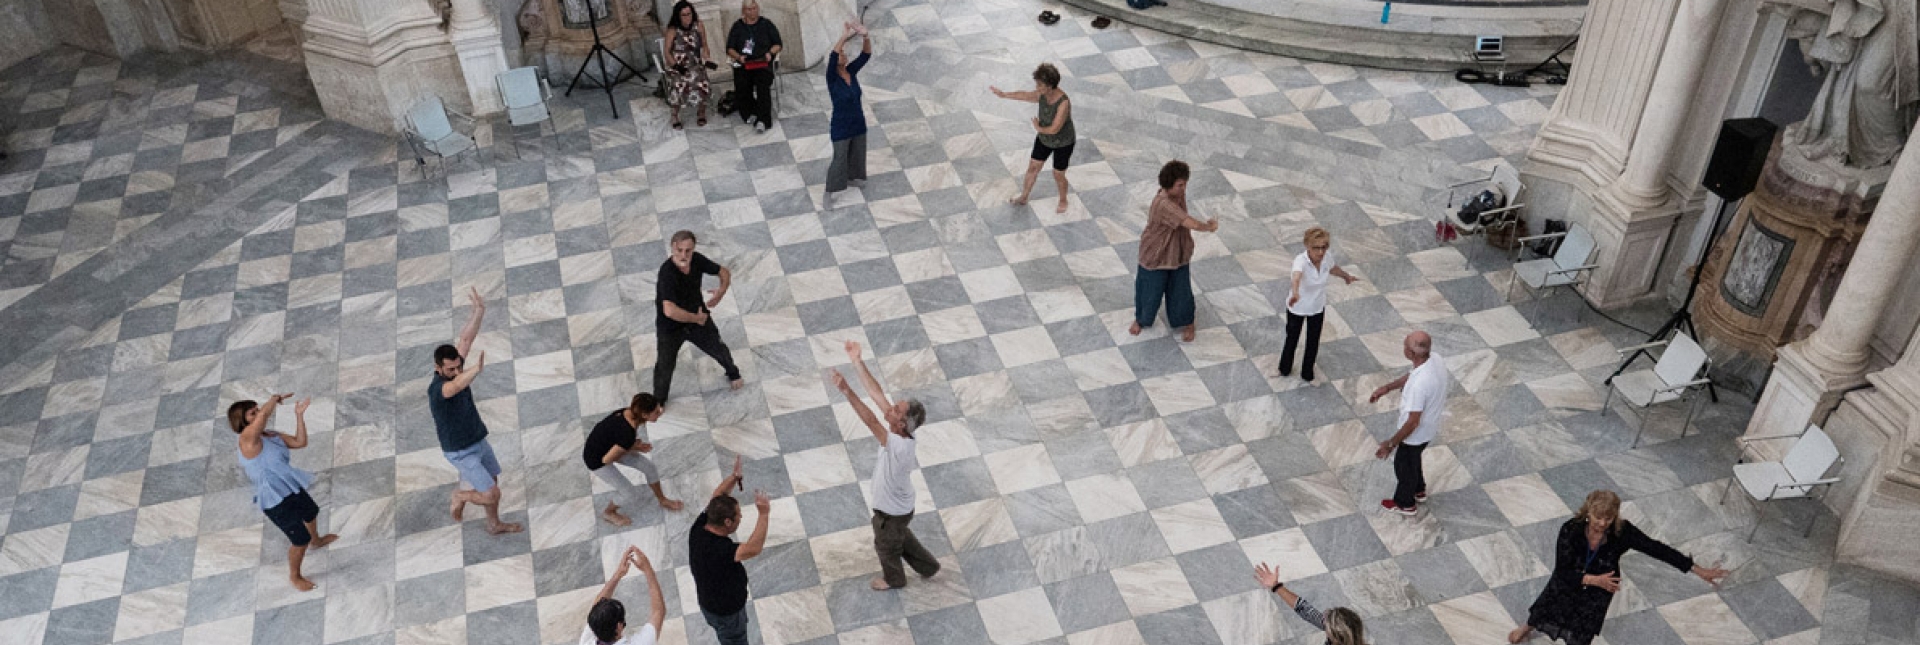 Partecipanti al progetto Dance well - Foto Fabio Melotti